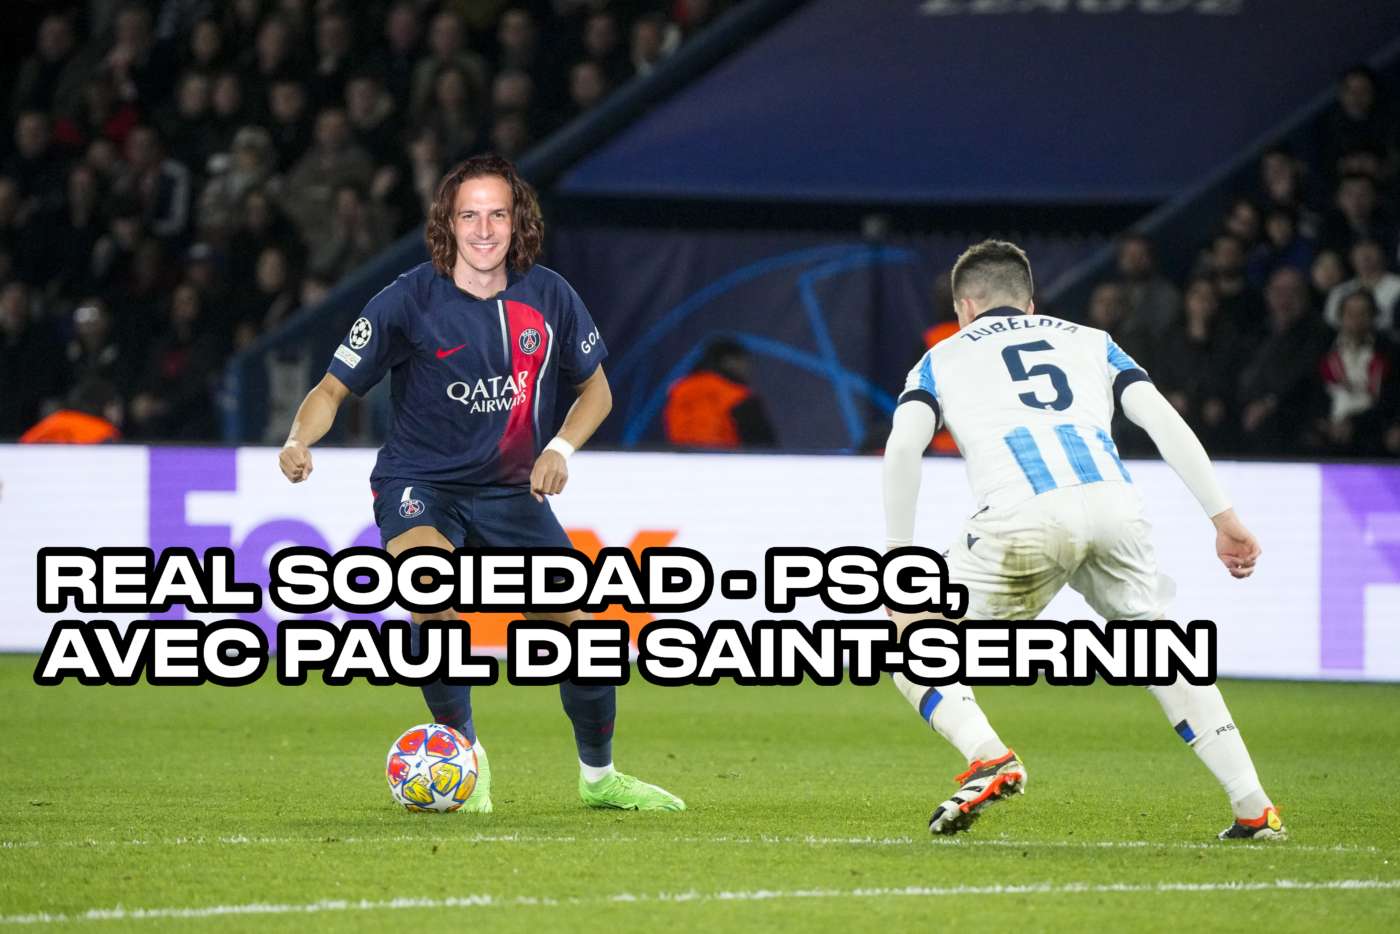 À partir de 20h, on commente Real Sociedad-PSG avec Paul de Saint Sernin sur Twitch